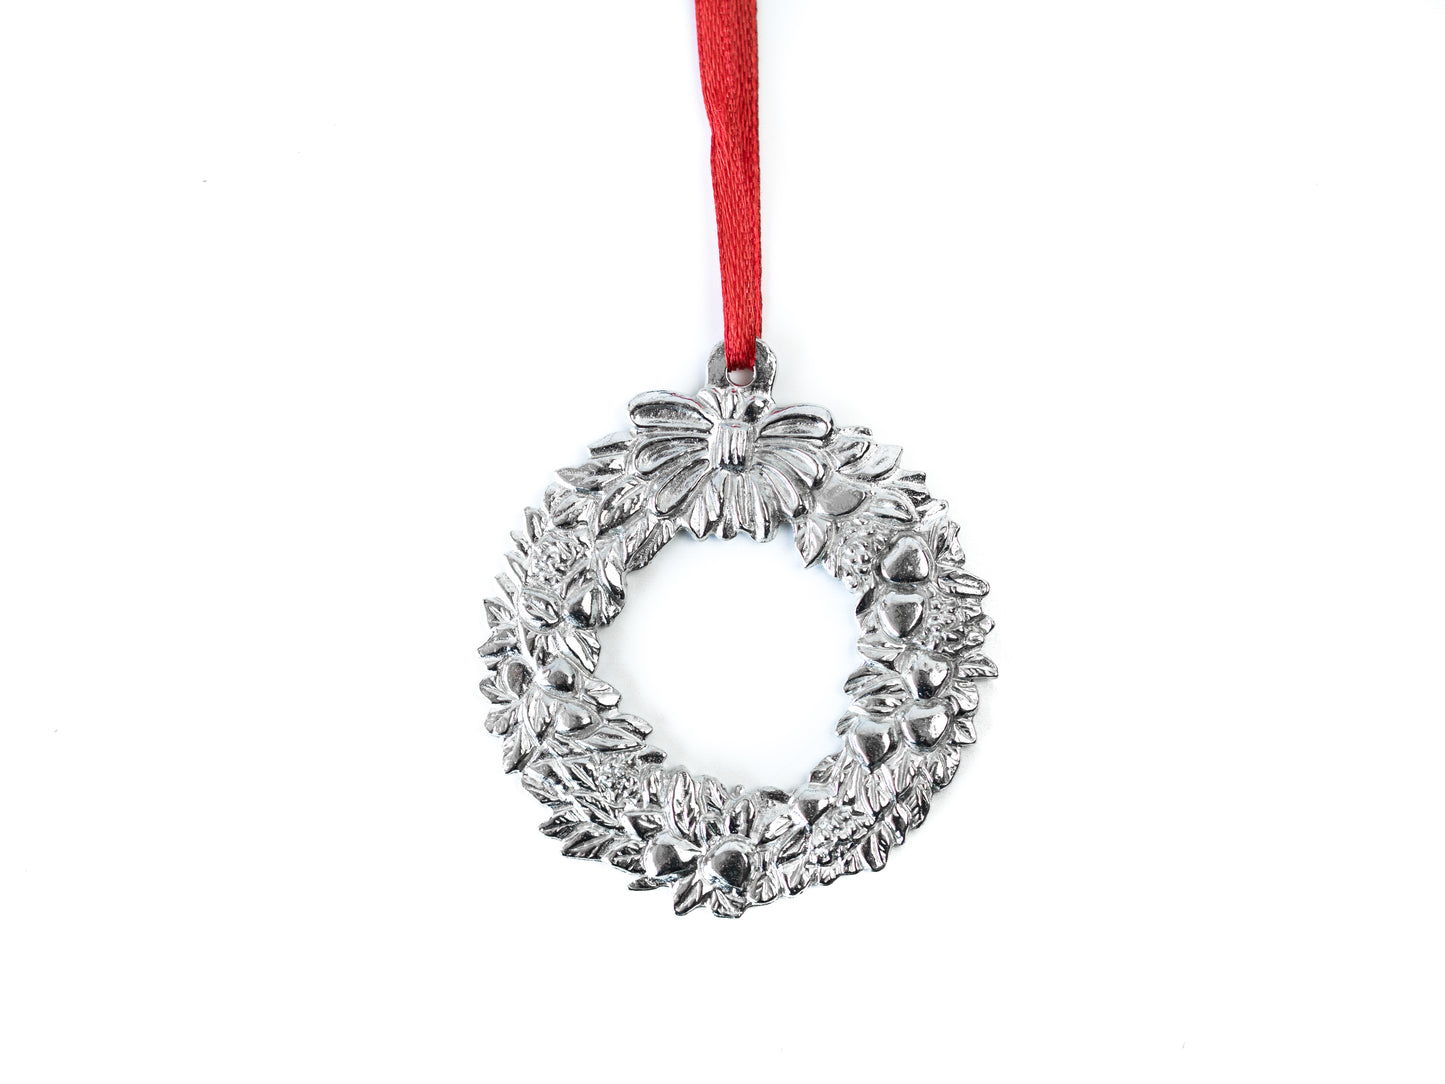 silver wreath ornament made in north carolina